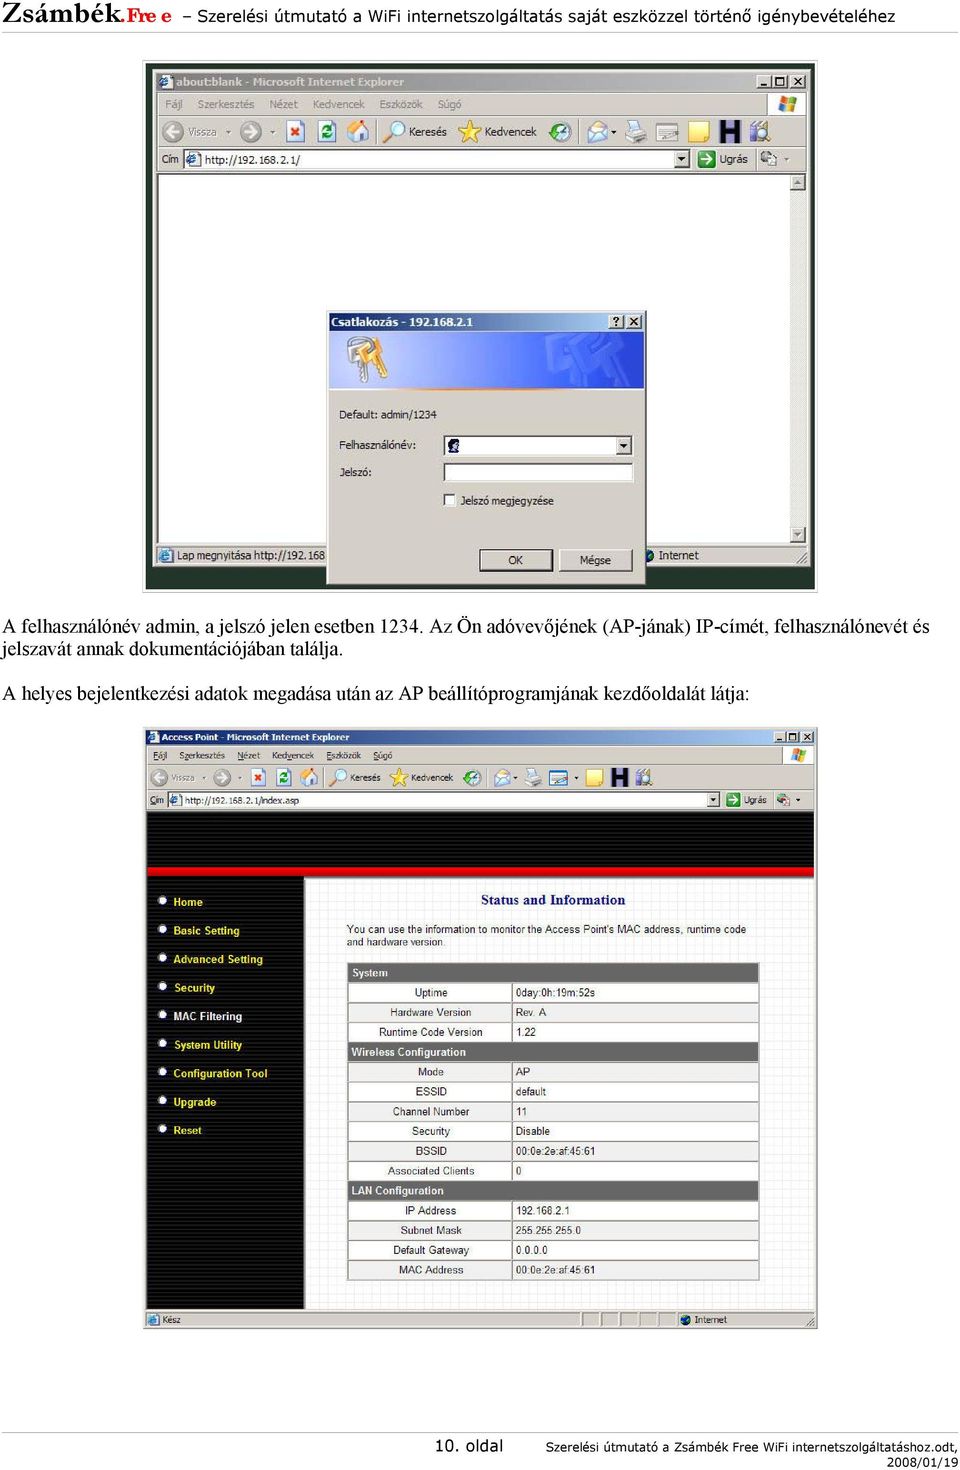 Szerelési útmutató a Zsámbék.Free WiFi internetszolgáltatás saját eszközzel  történő igénybevételéhez - PDF Ingyenes letöltés